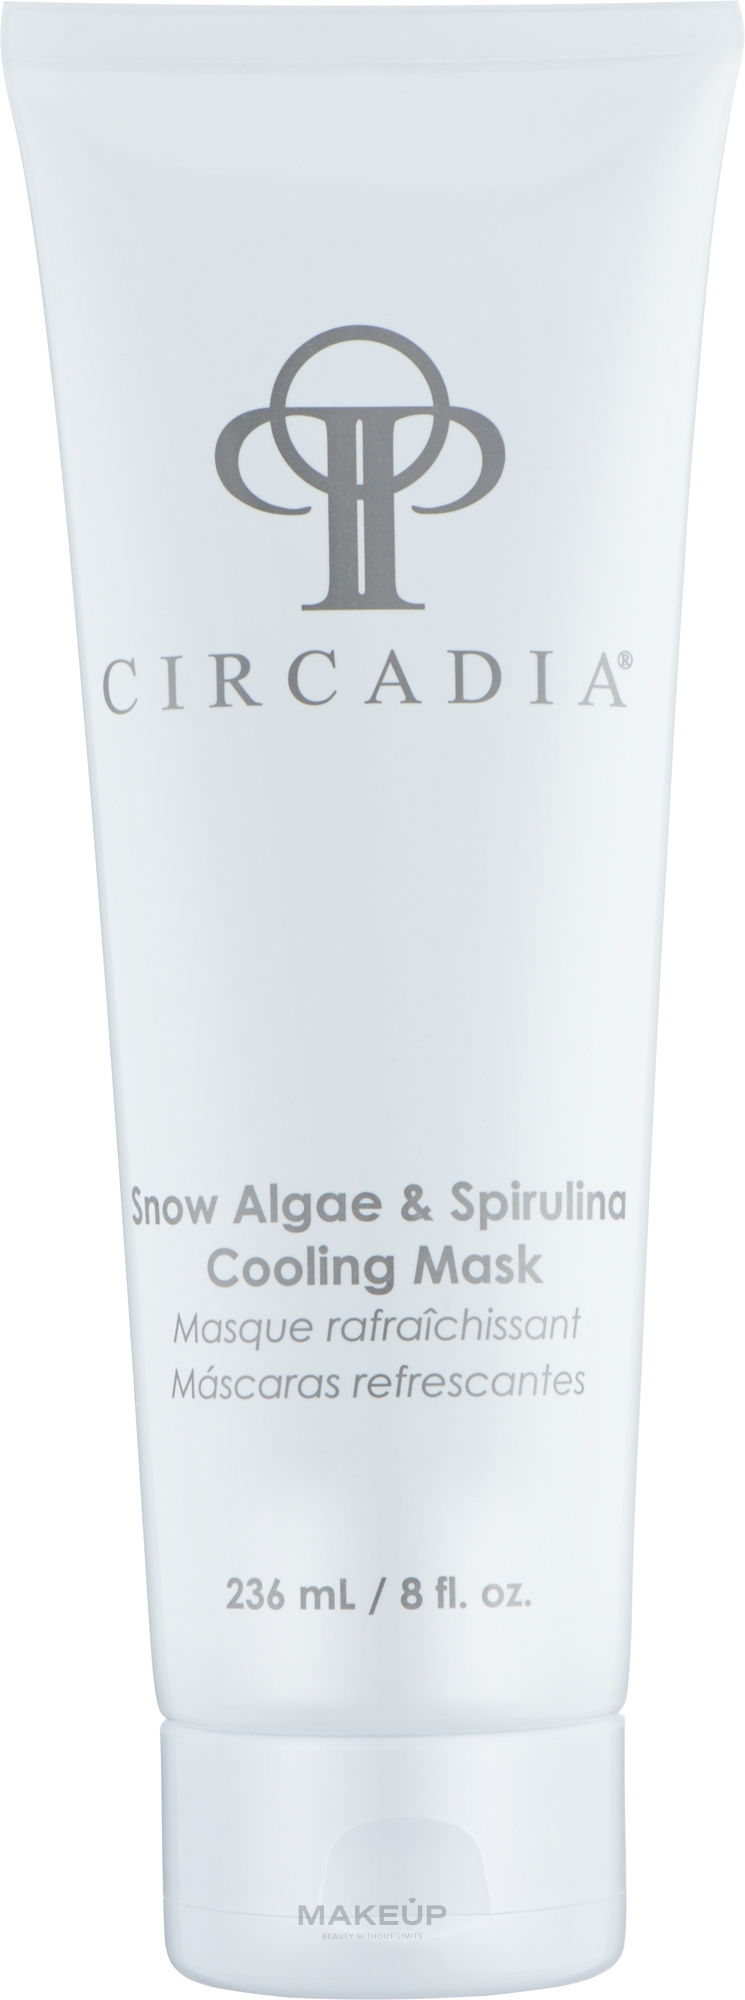 Охлаждающая маска для лица из спирулины - Circadia Snow Algae and Spirulina Cooling Mask — фото 236ml